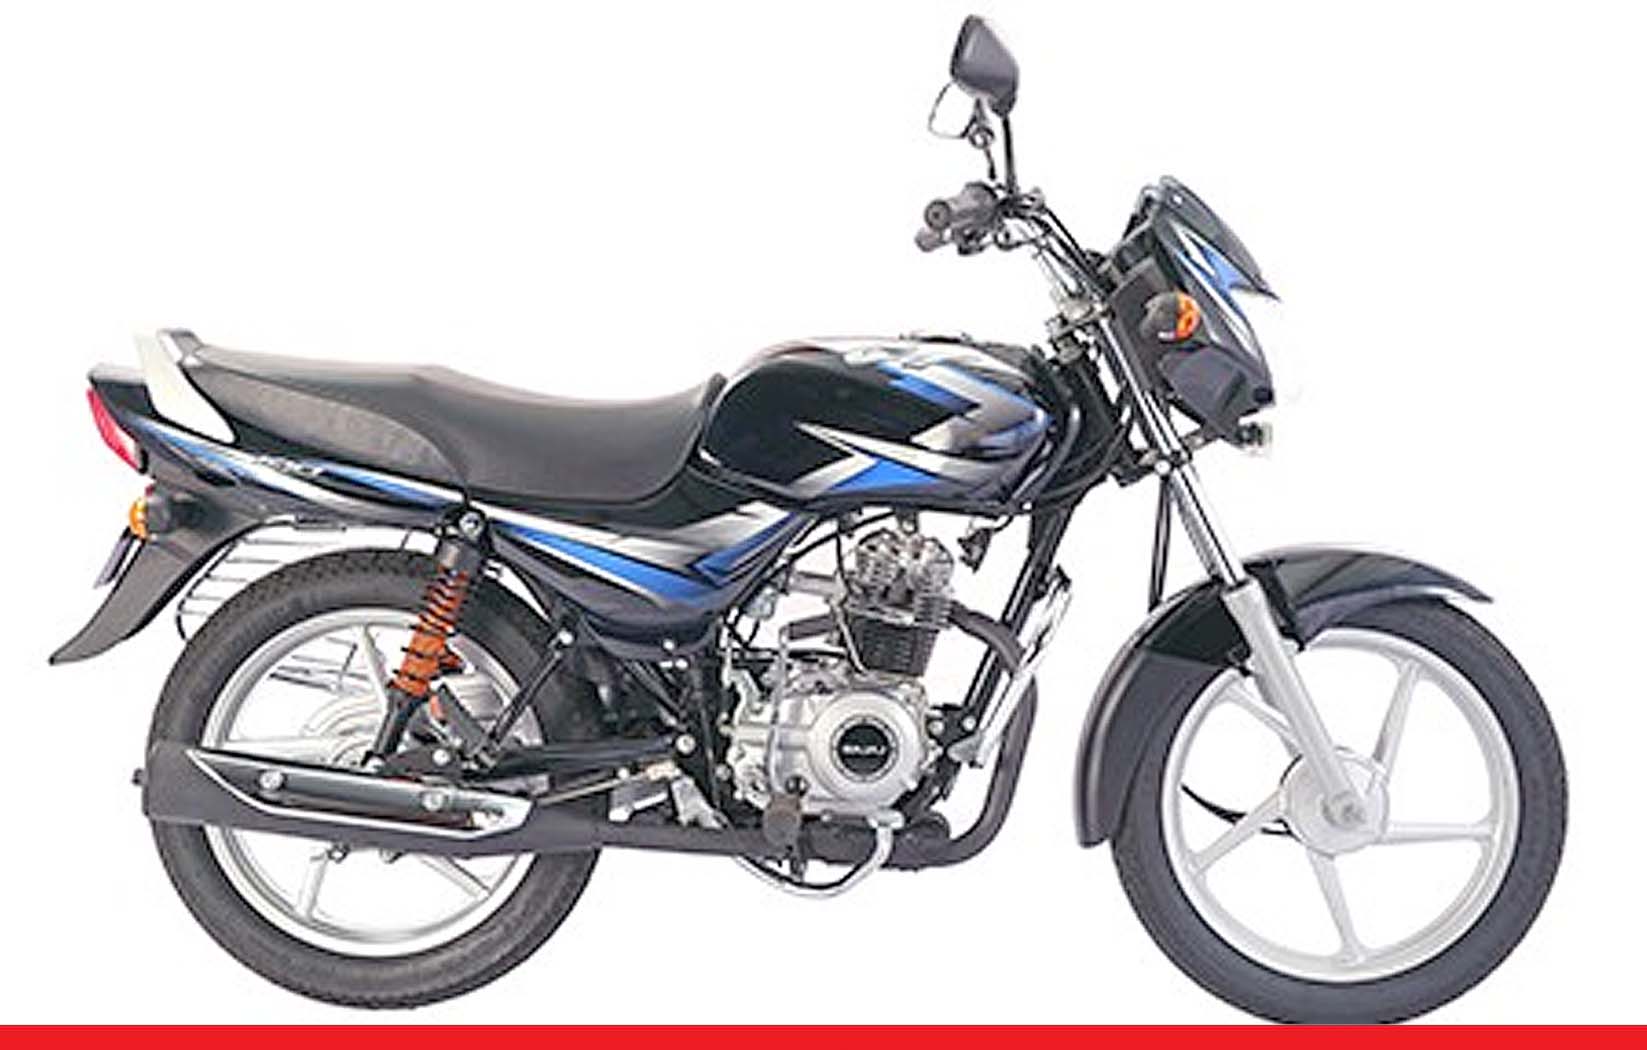 भारत की पहली और सबसे सस्ती 110cc की ABS बाइक लॉन्च